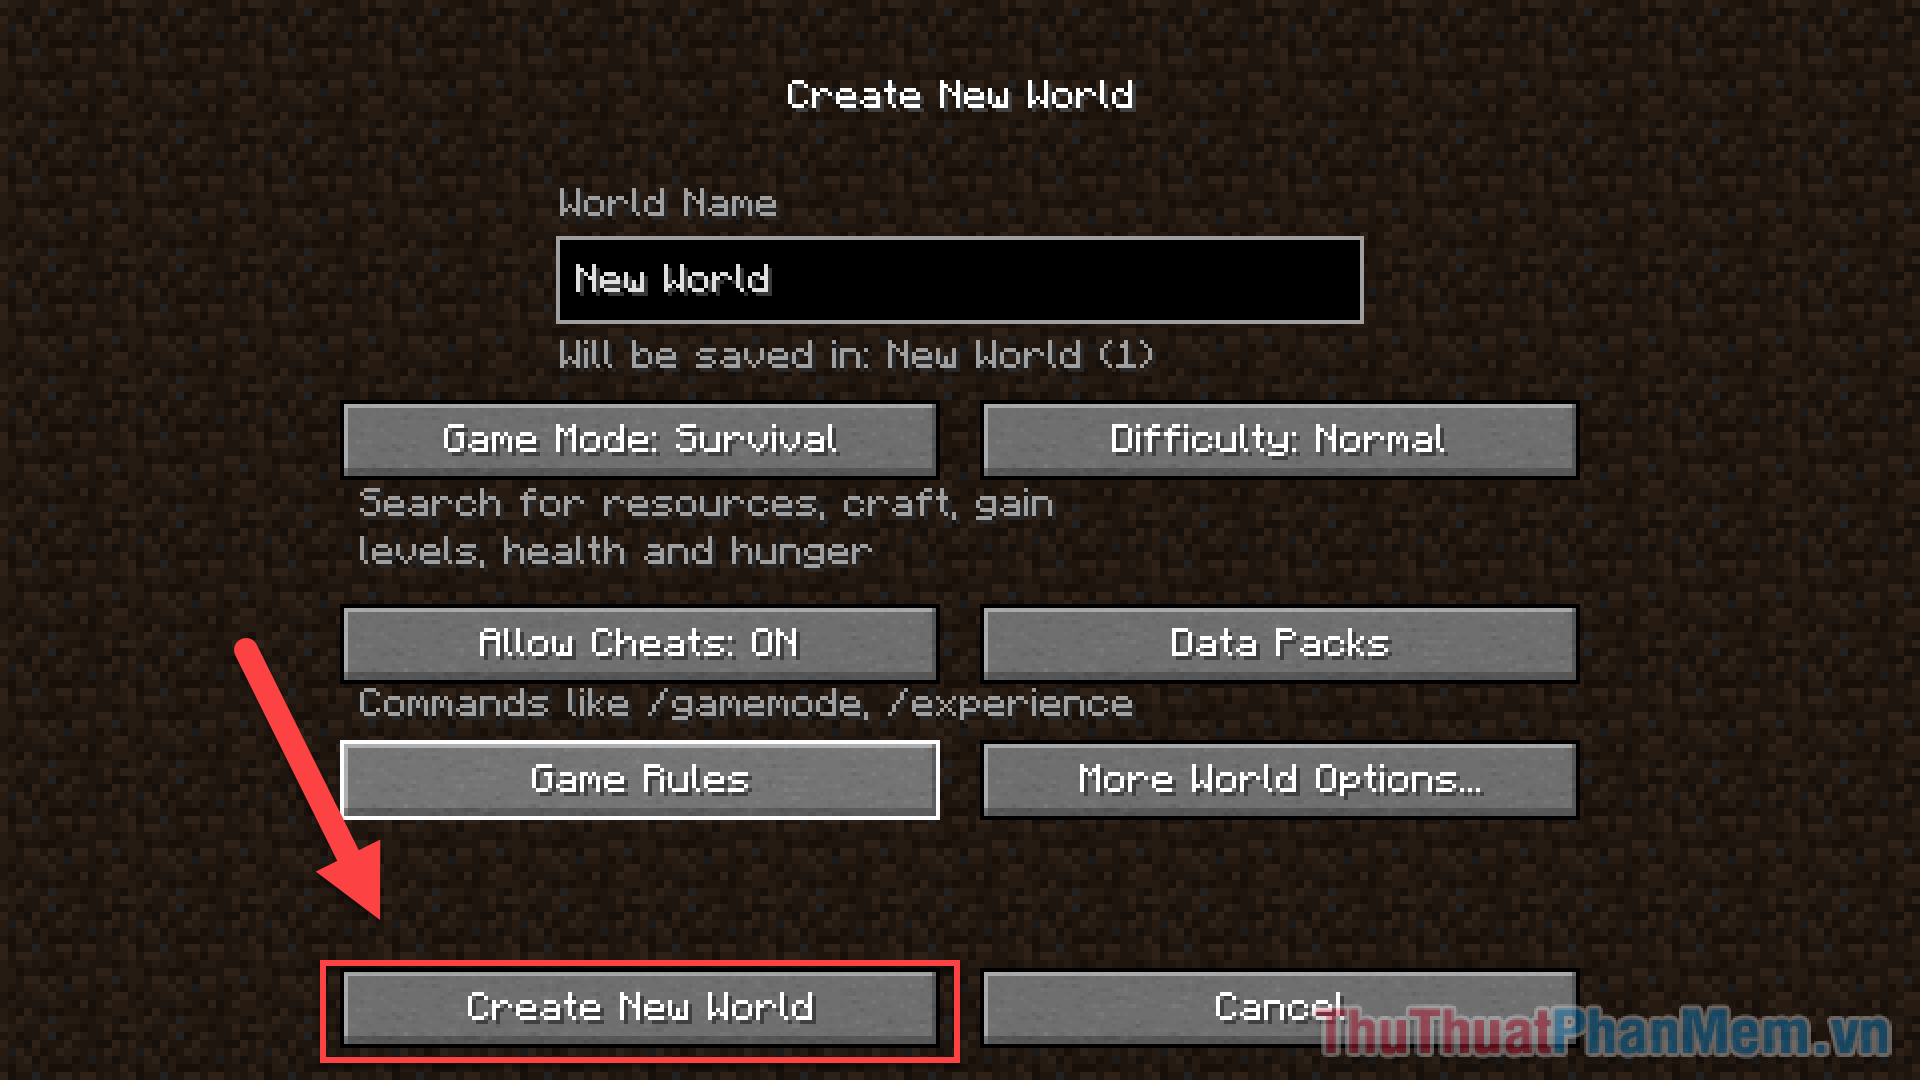 Nhấp vào Create New World để tạo thế giới